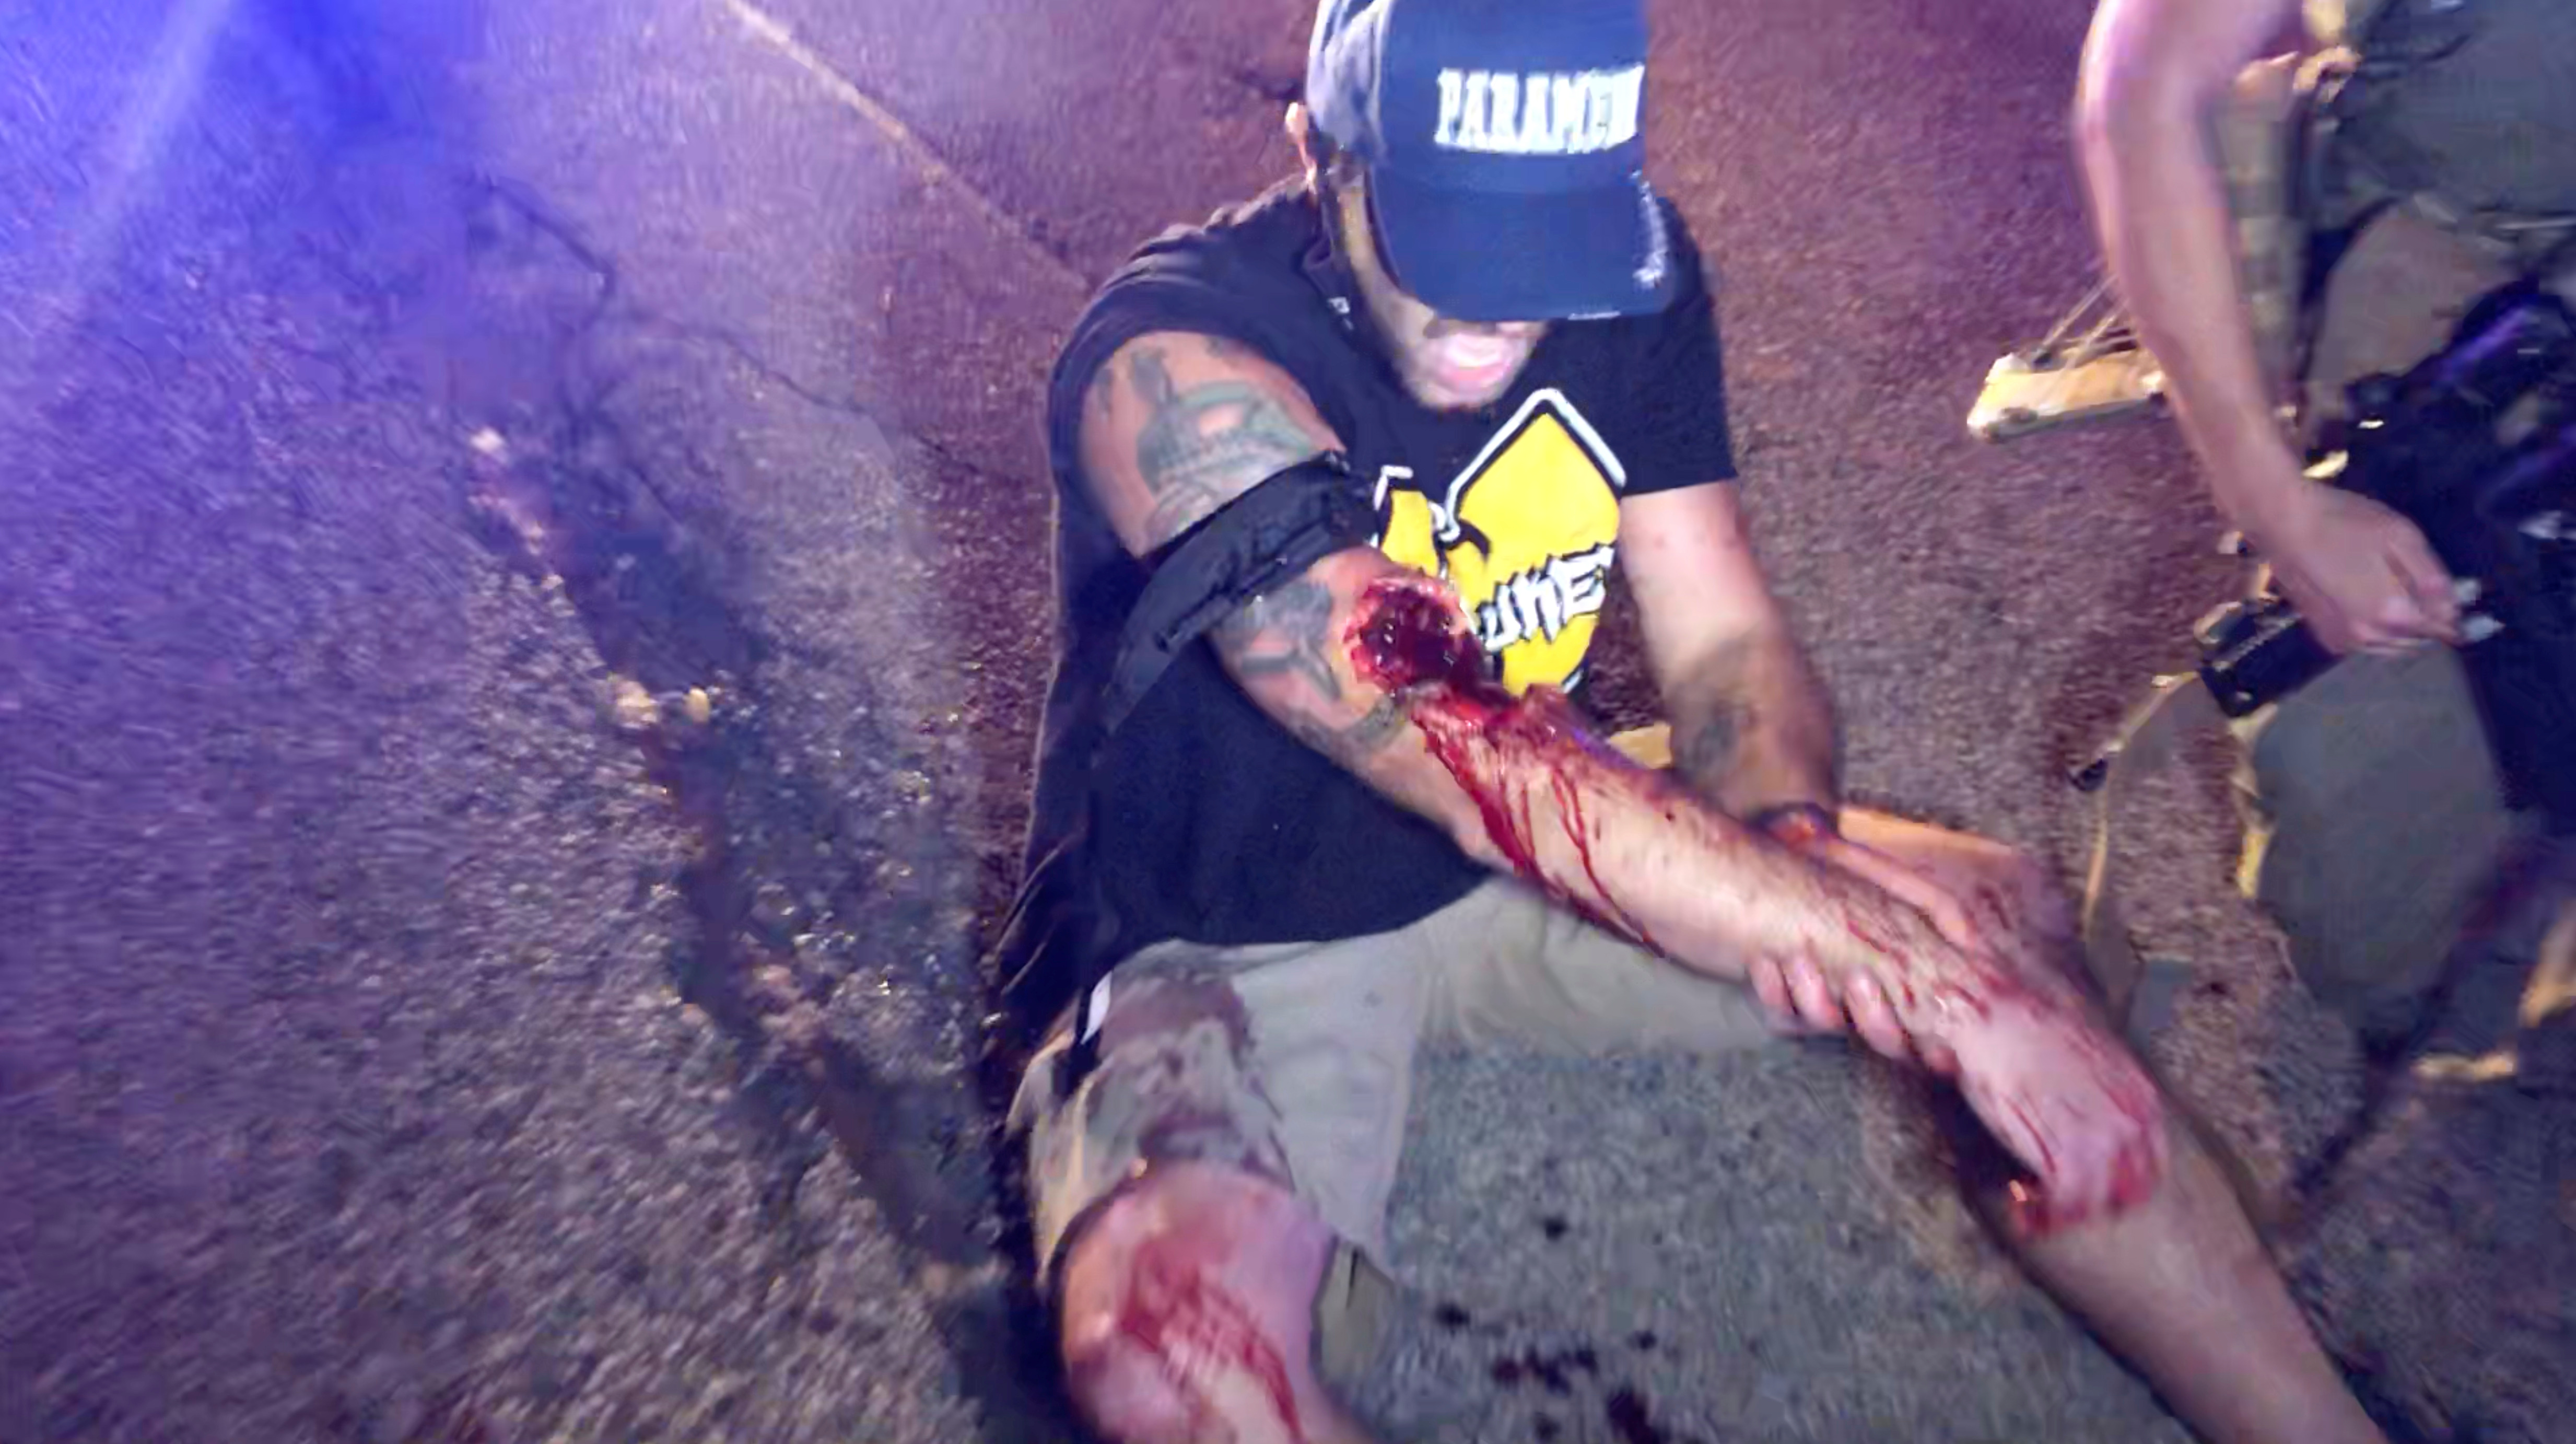 Uno de los heridos grita momento después de recibir un disparo de arma de fuego (INSTAGRAM / @LOURIEALEX/via REUTERS)
